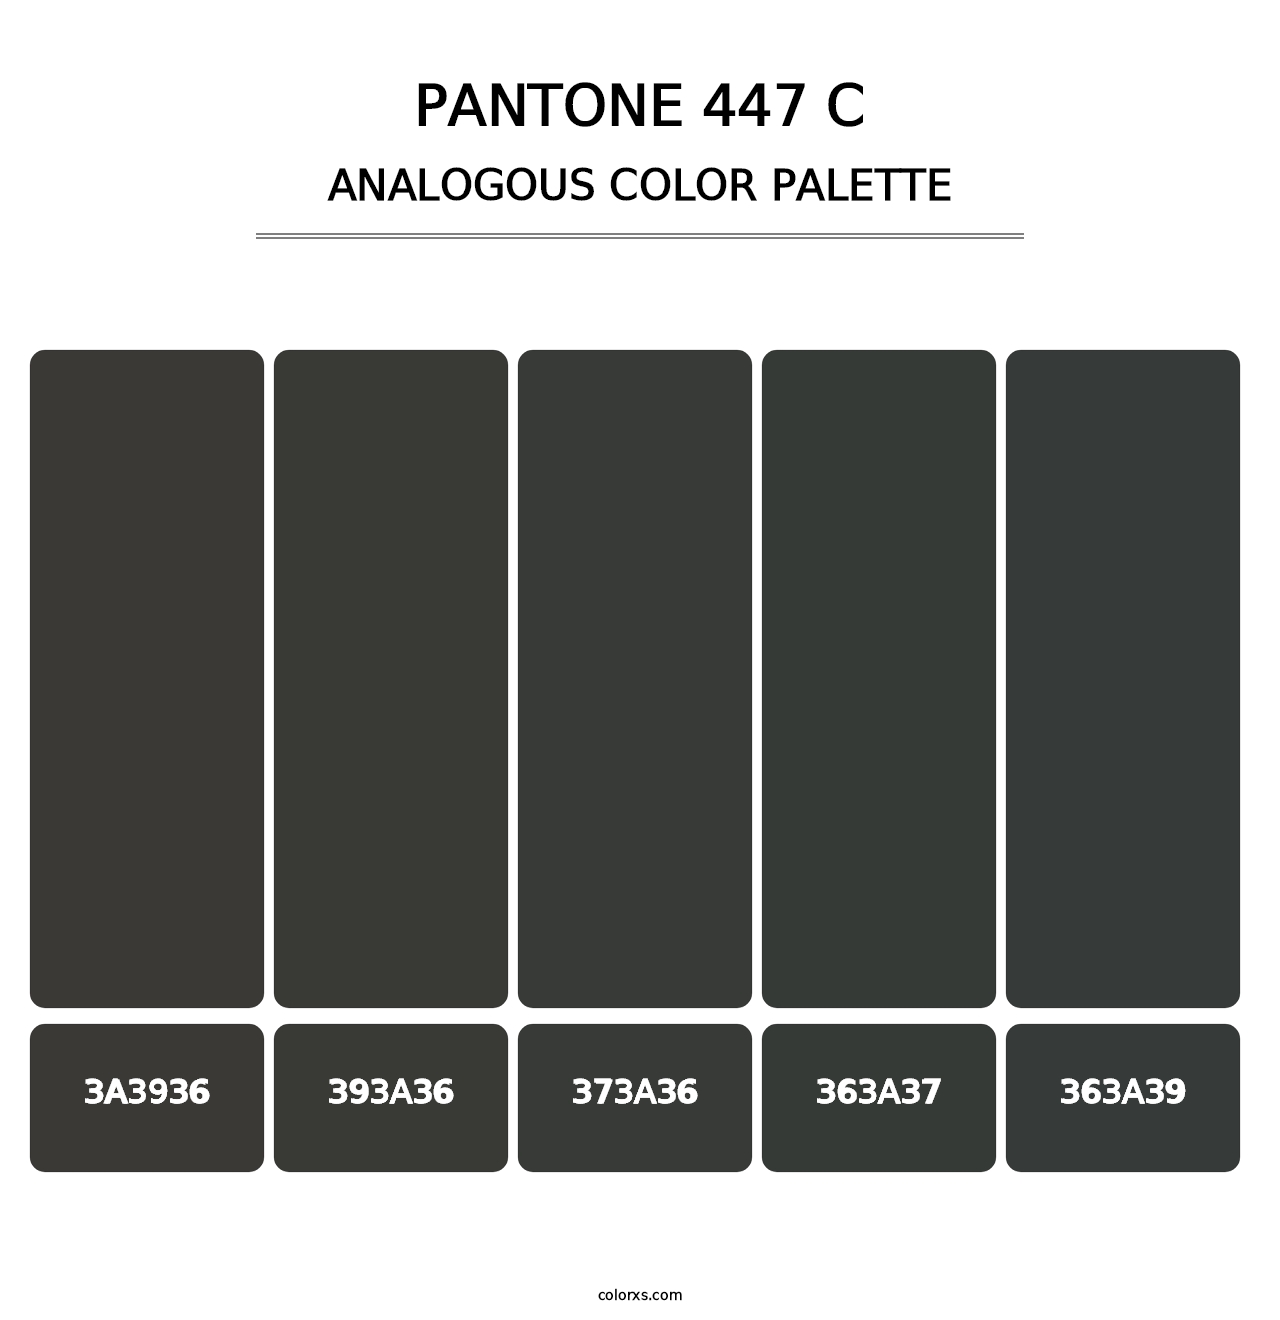 PANTONE 447 C - Analogous Color Palette